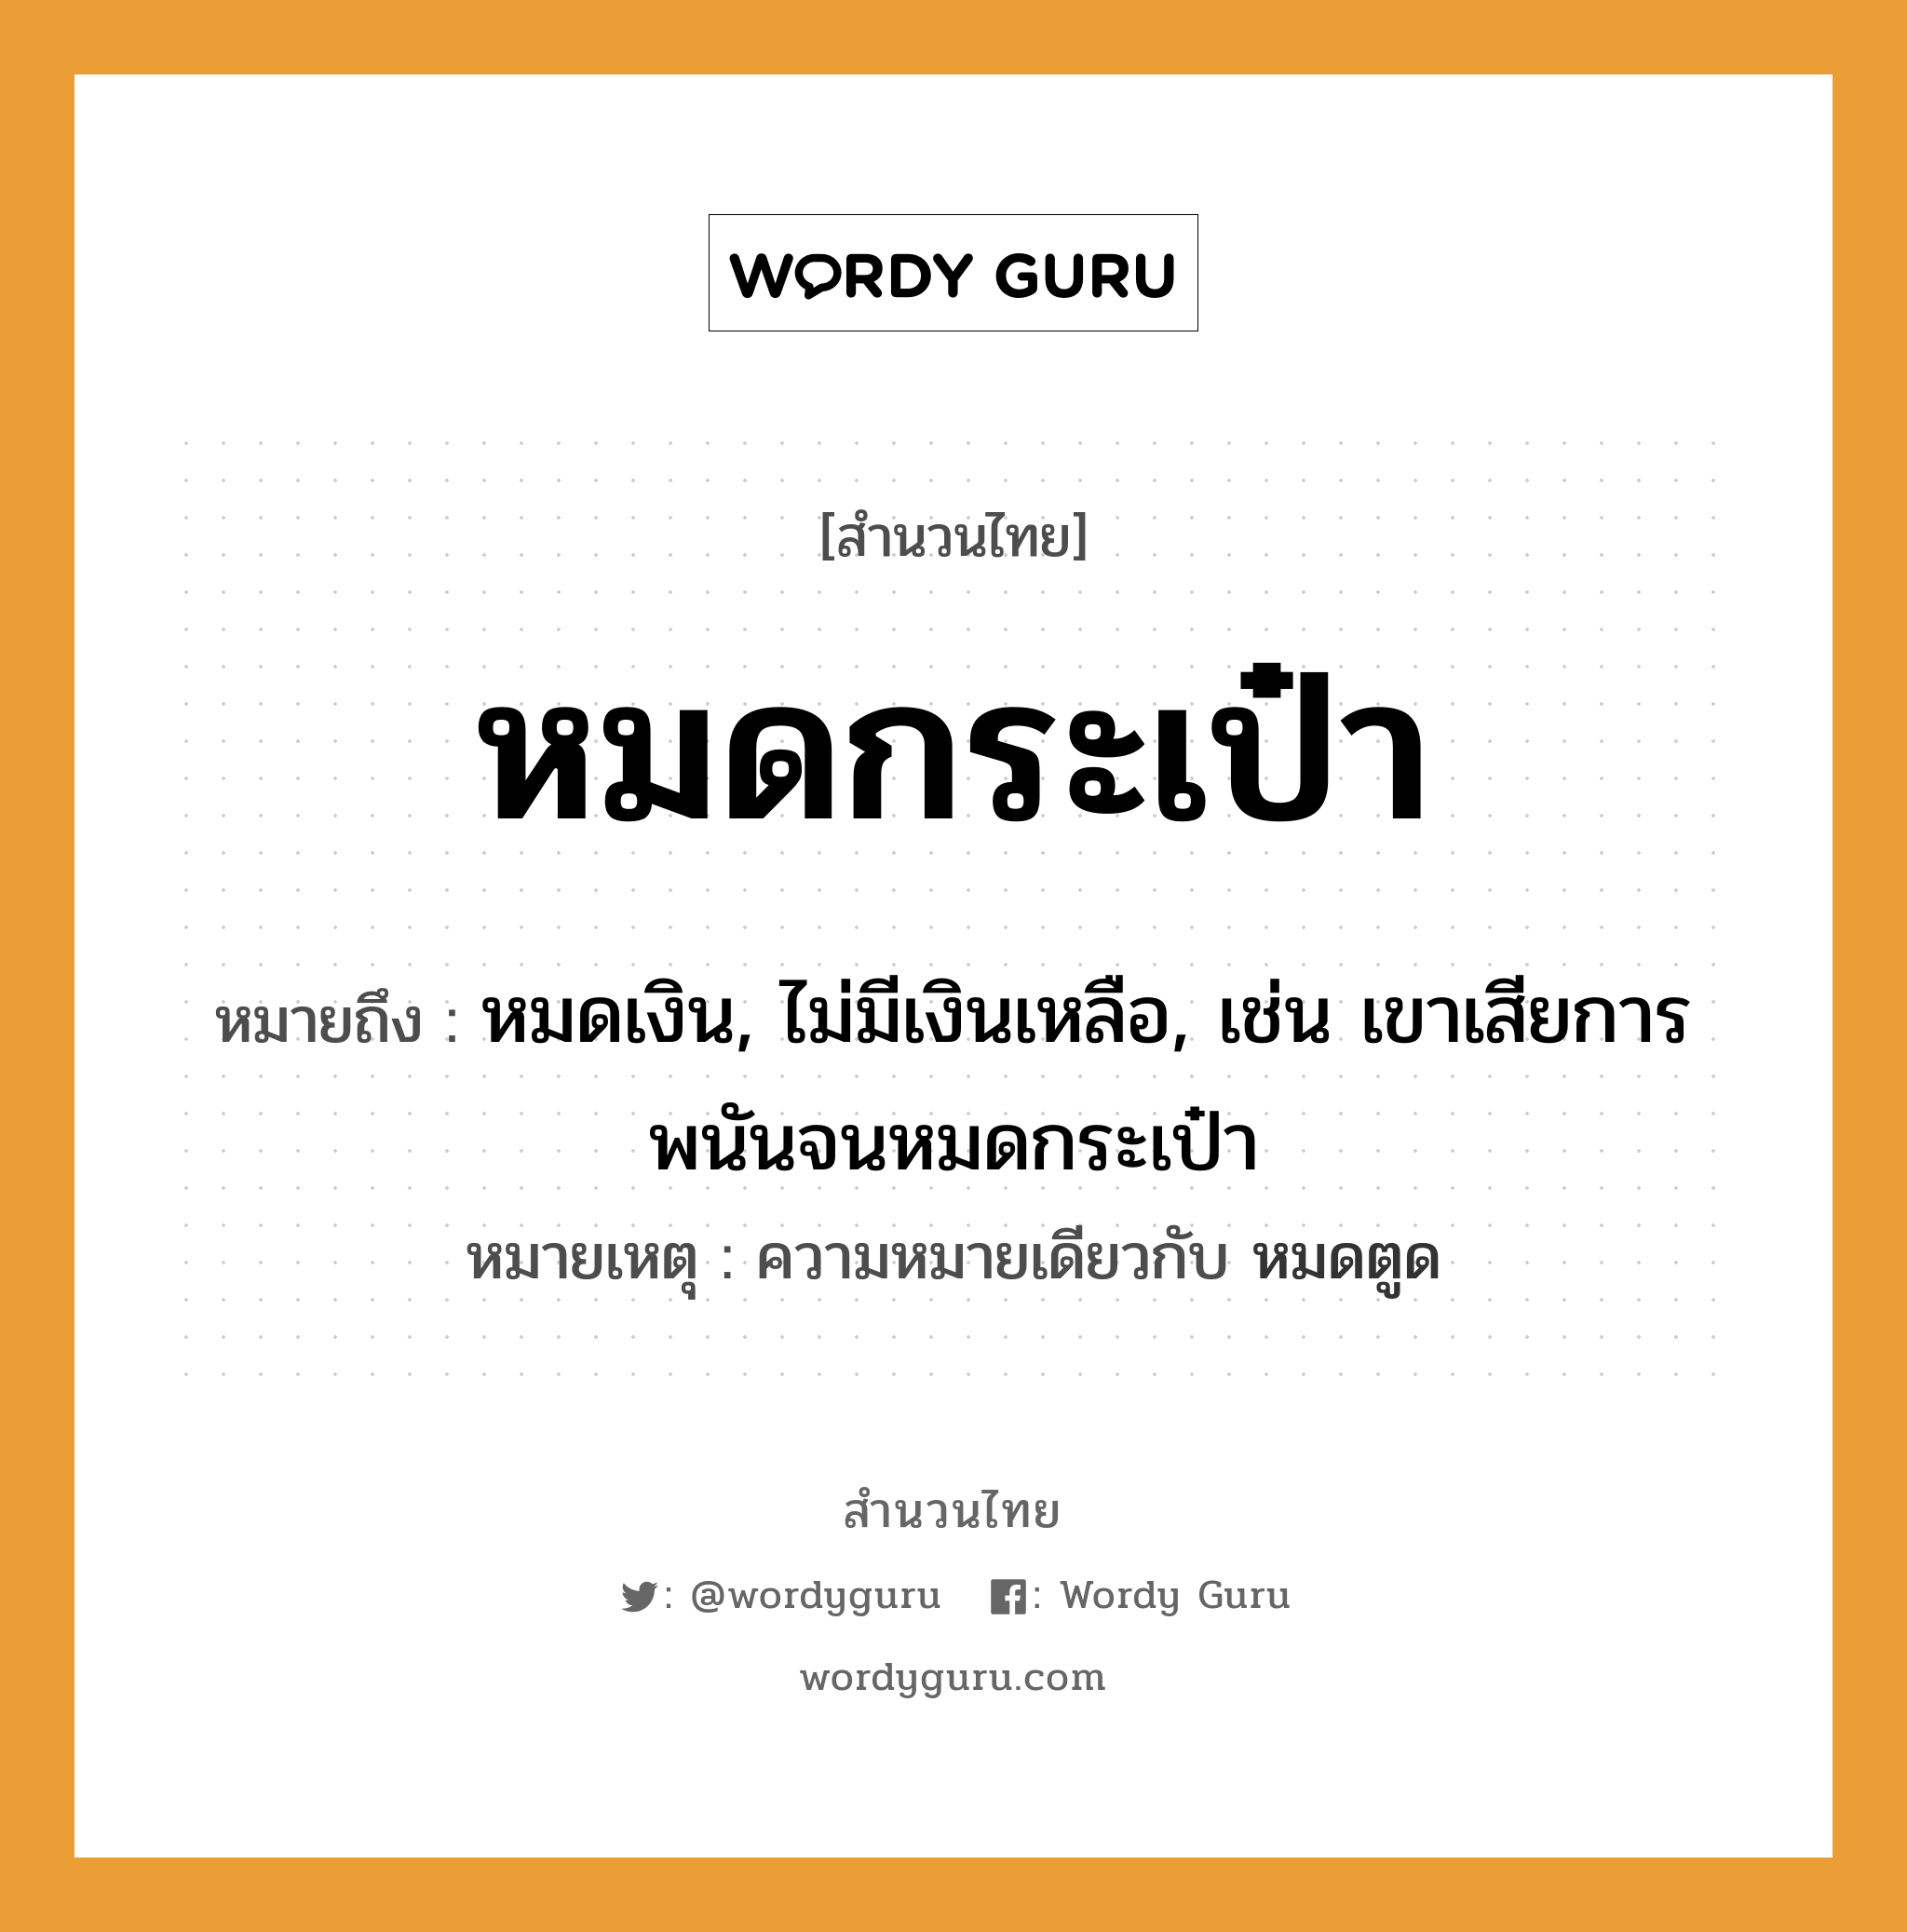 สำนวนไทย: หมดกระเป๋า หมายถึง?, หมายถึง หมดเงิน, ไม่มีเงินเหลือ, เช่น เขาเสียการพนันจนหมดกระเป๋า หมายเหตุ ความหมายเดียวกับ หมดตูด